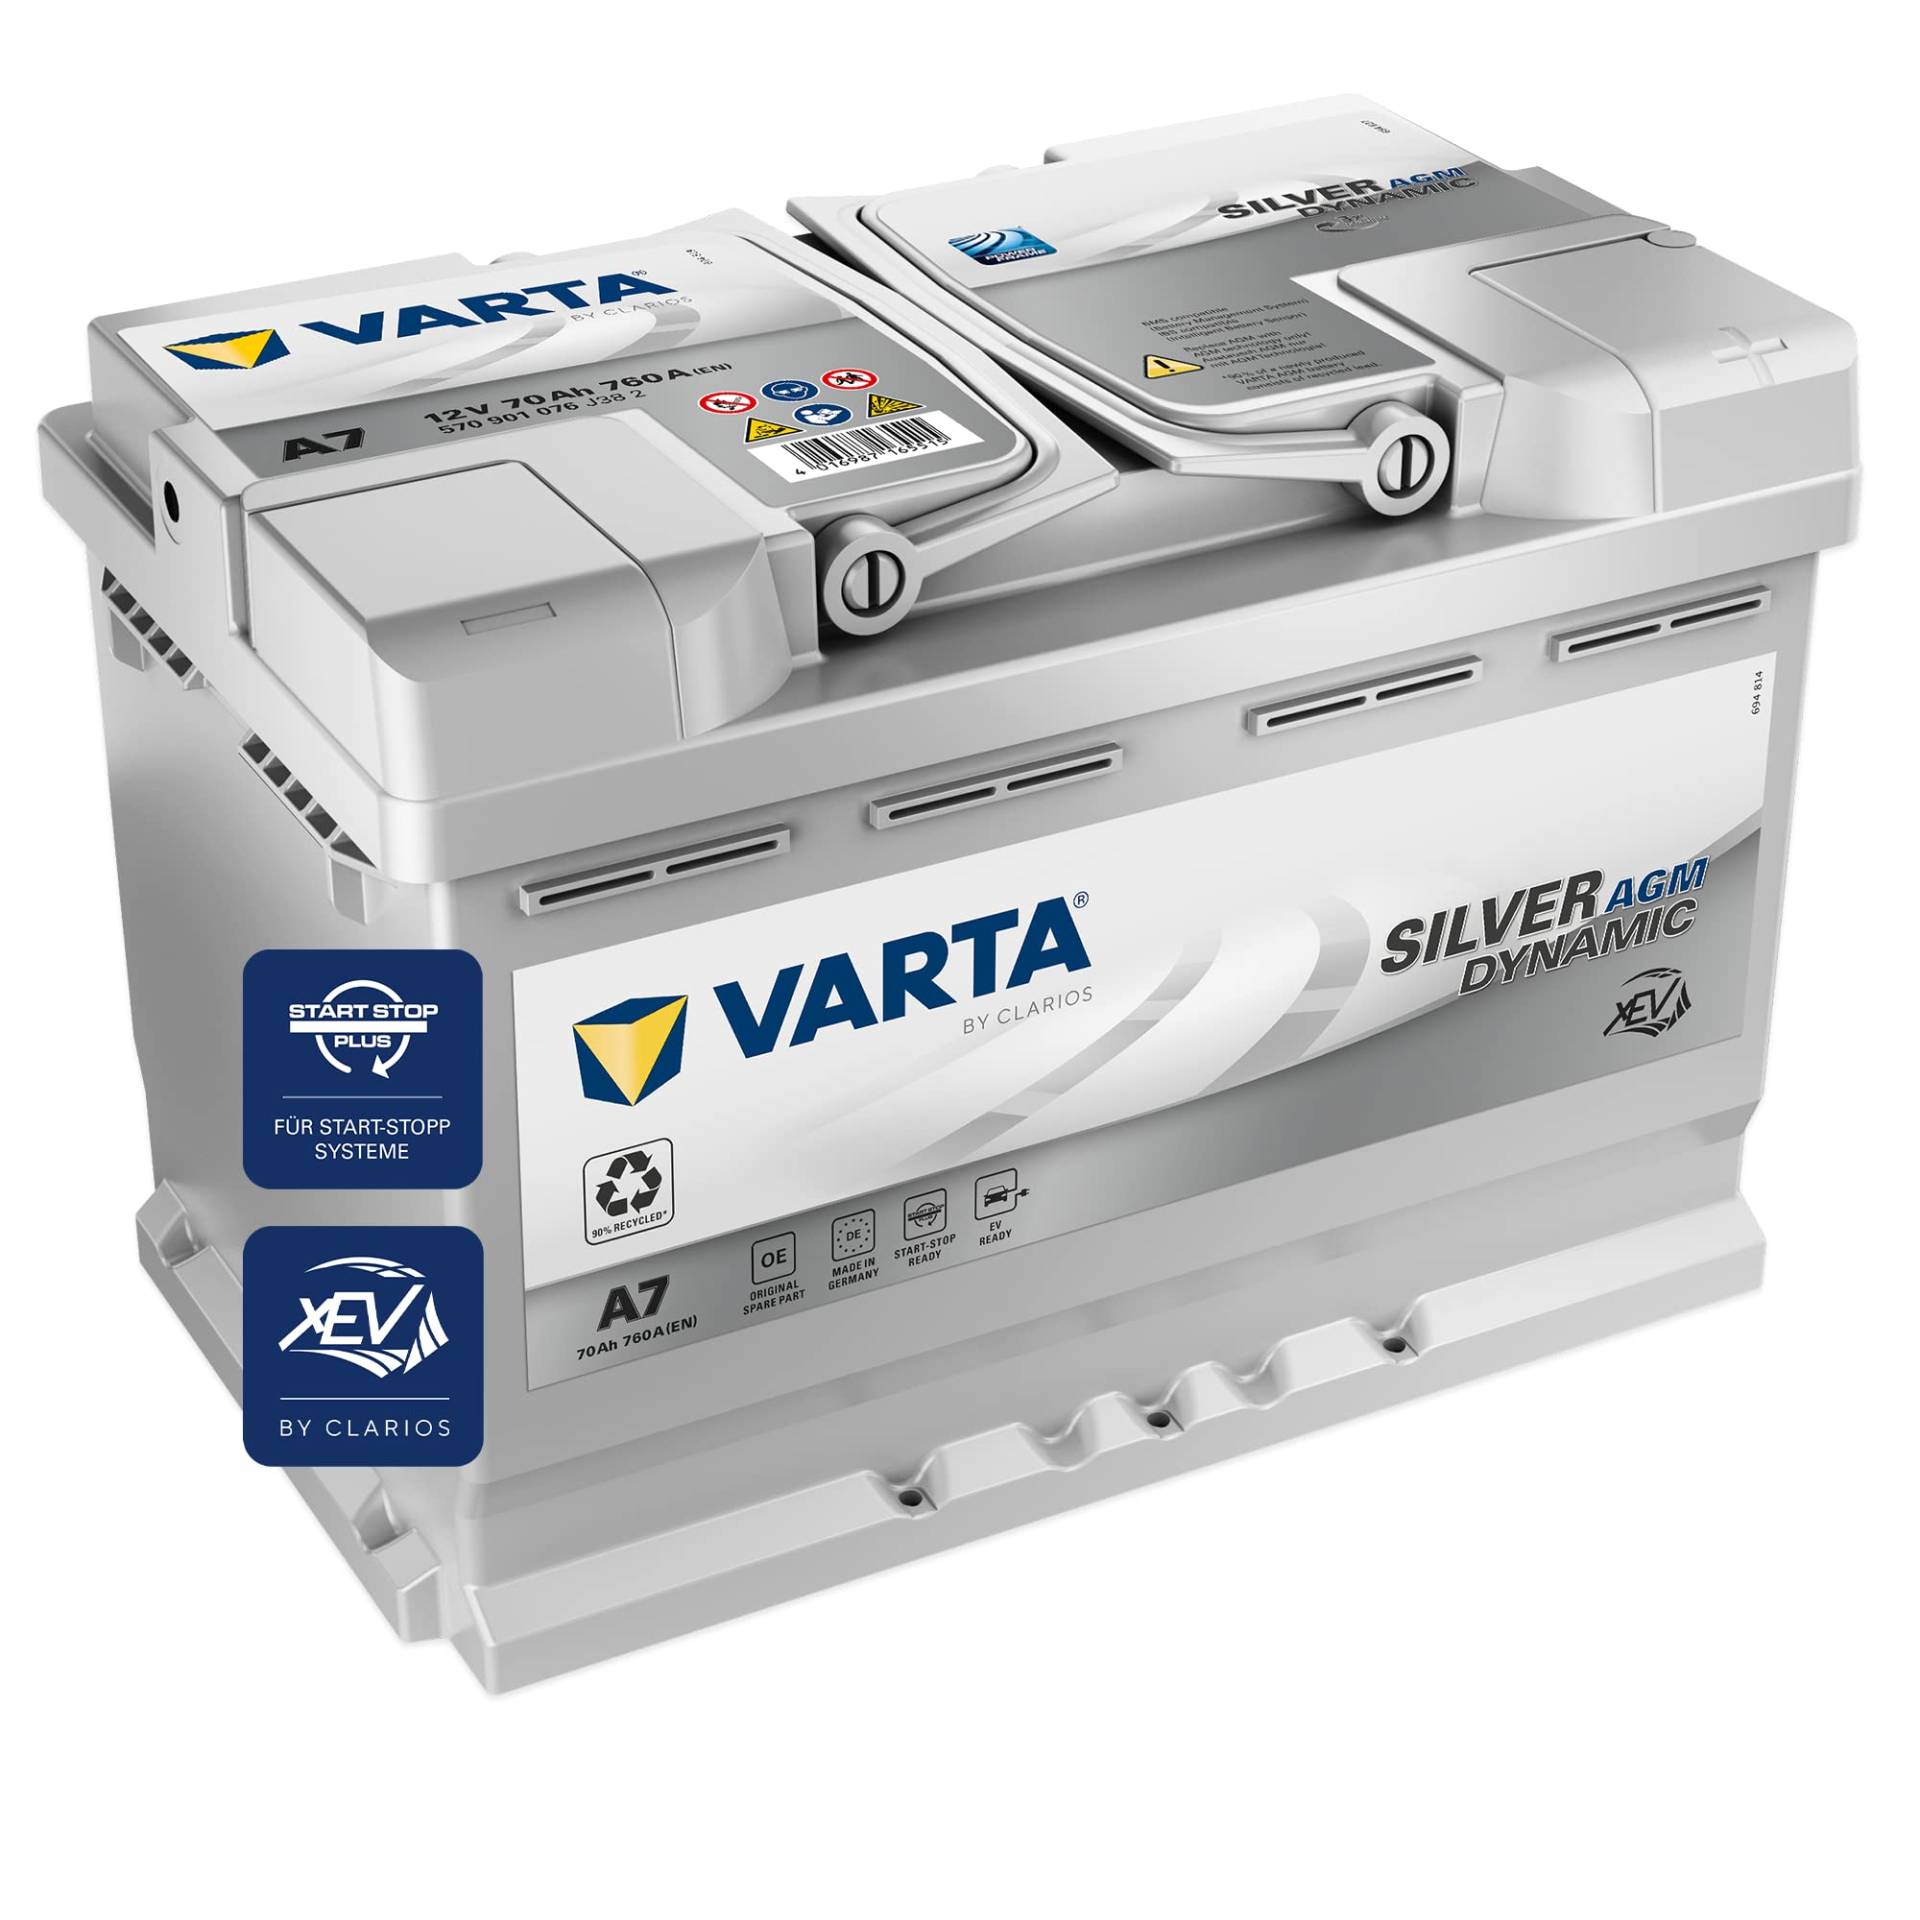 VARTA Silver Dynamic AGM Batterie A7 (E39) – Start-Stop und xEV Autobatterie 12V 70Ah 760A – Starterbatterie für Autos mit hohem Energiebedarf von Varta